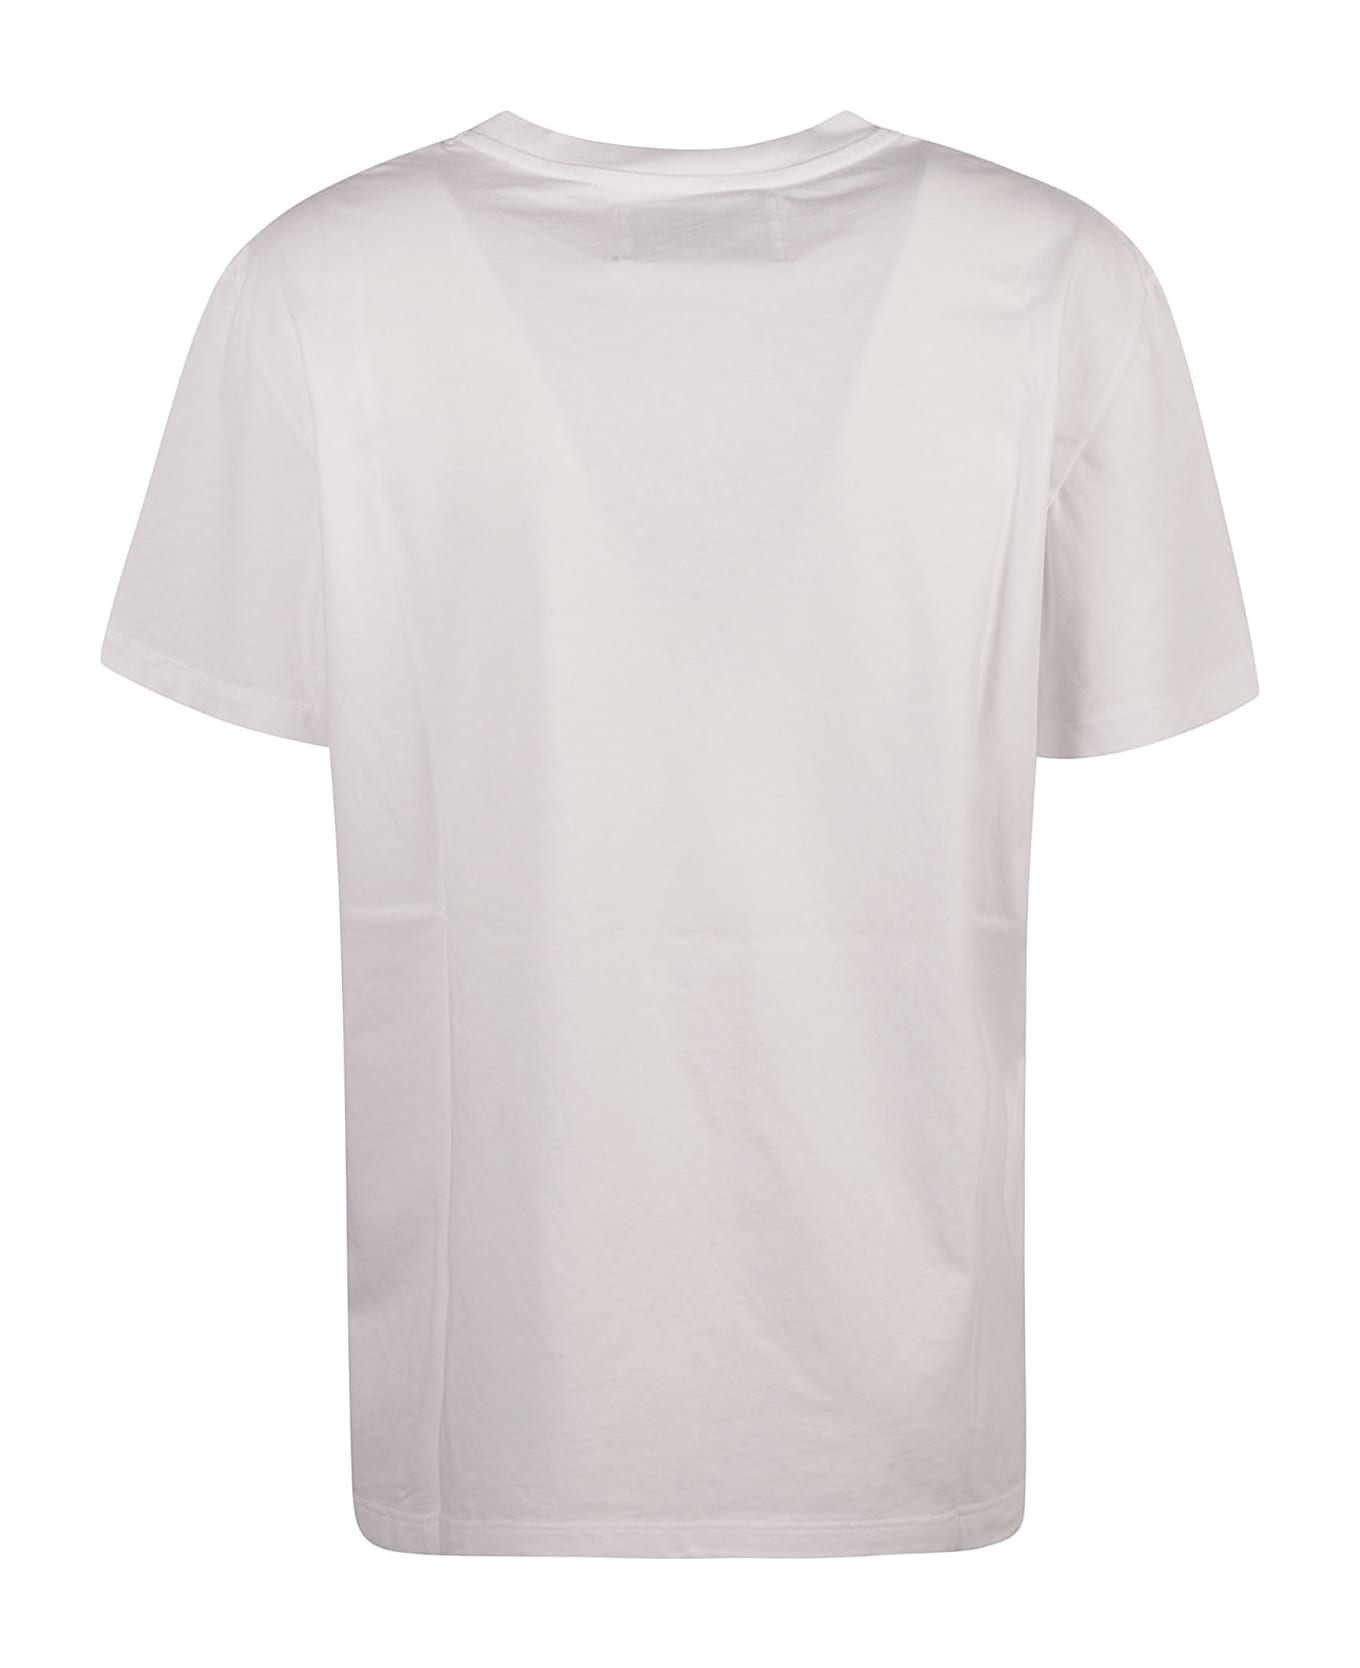 Golden Goose Star T-shirt - White Tシャツ